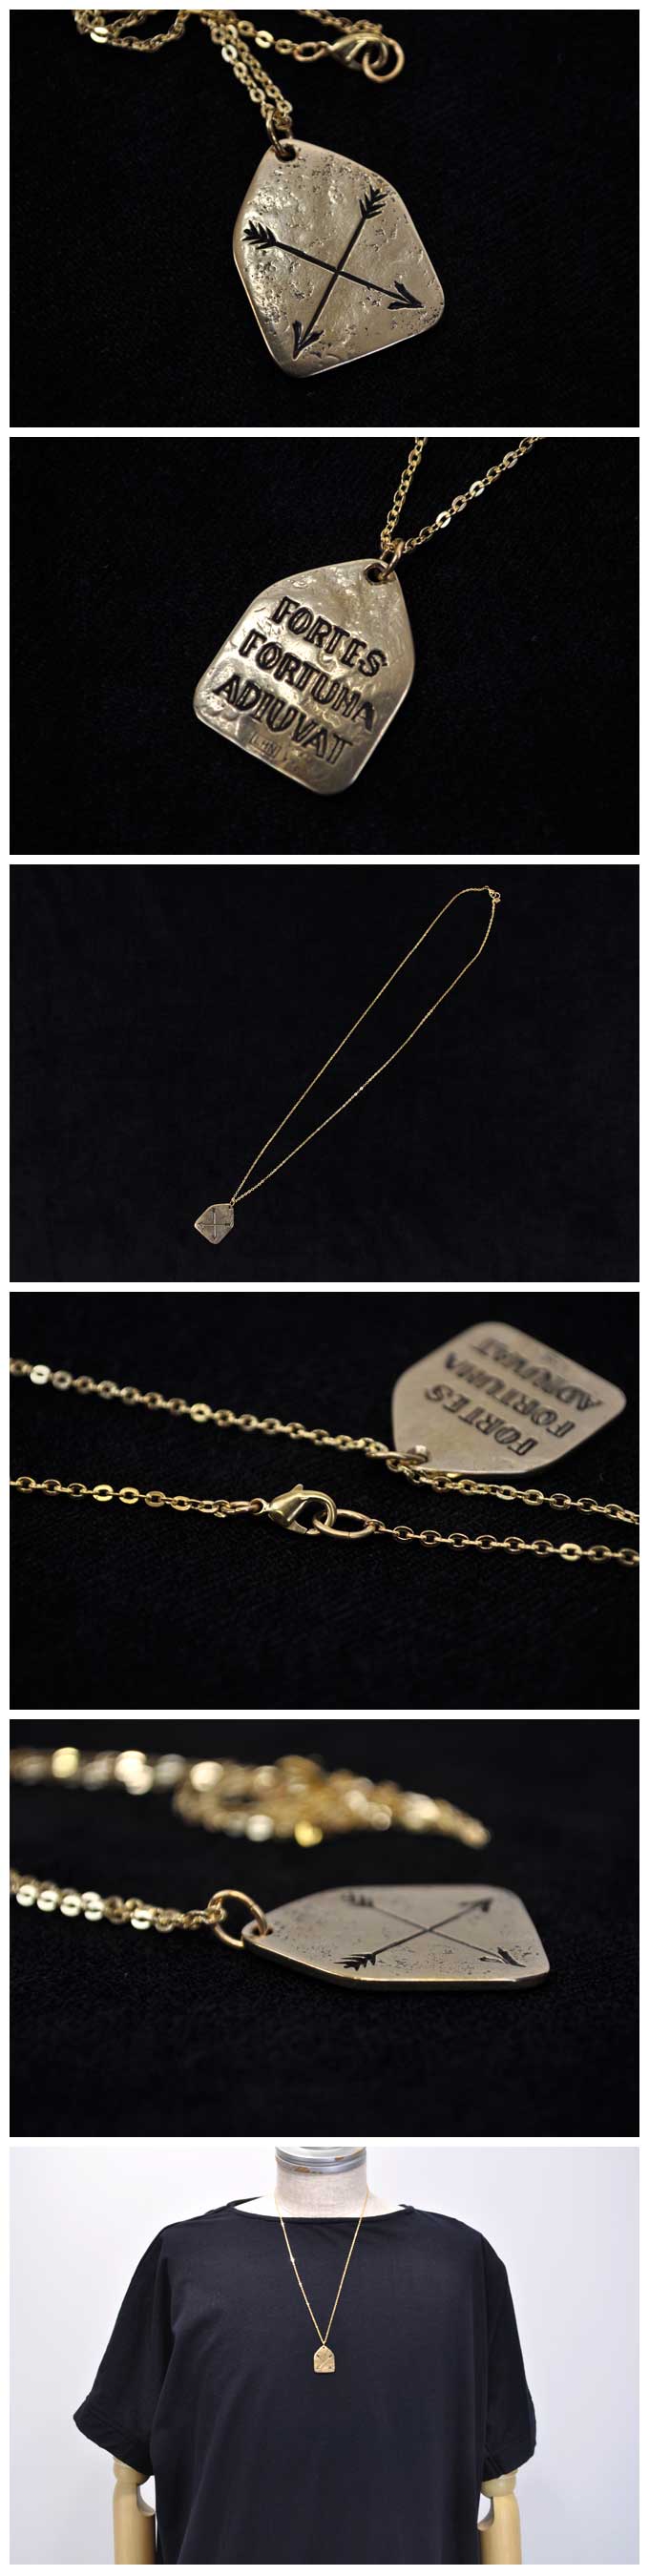 LHN Jewelry Arrow Charm Necklace